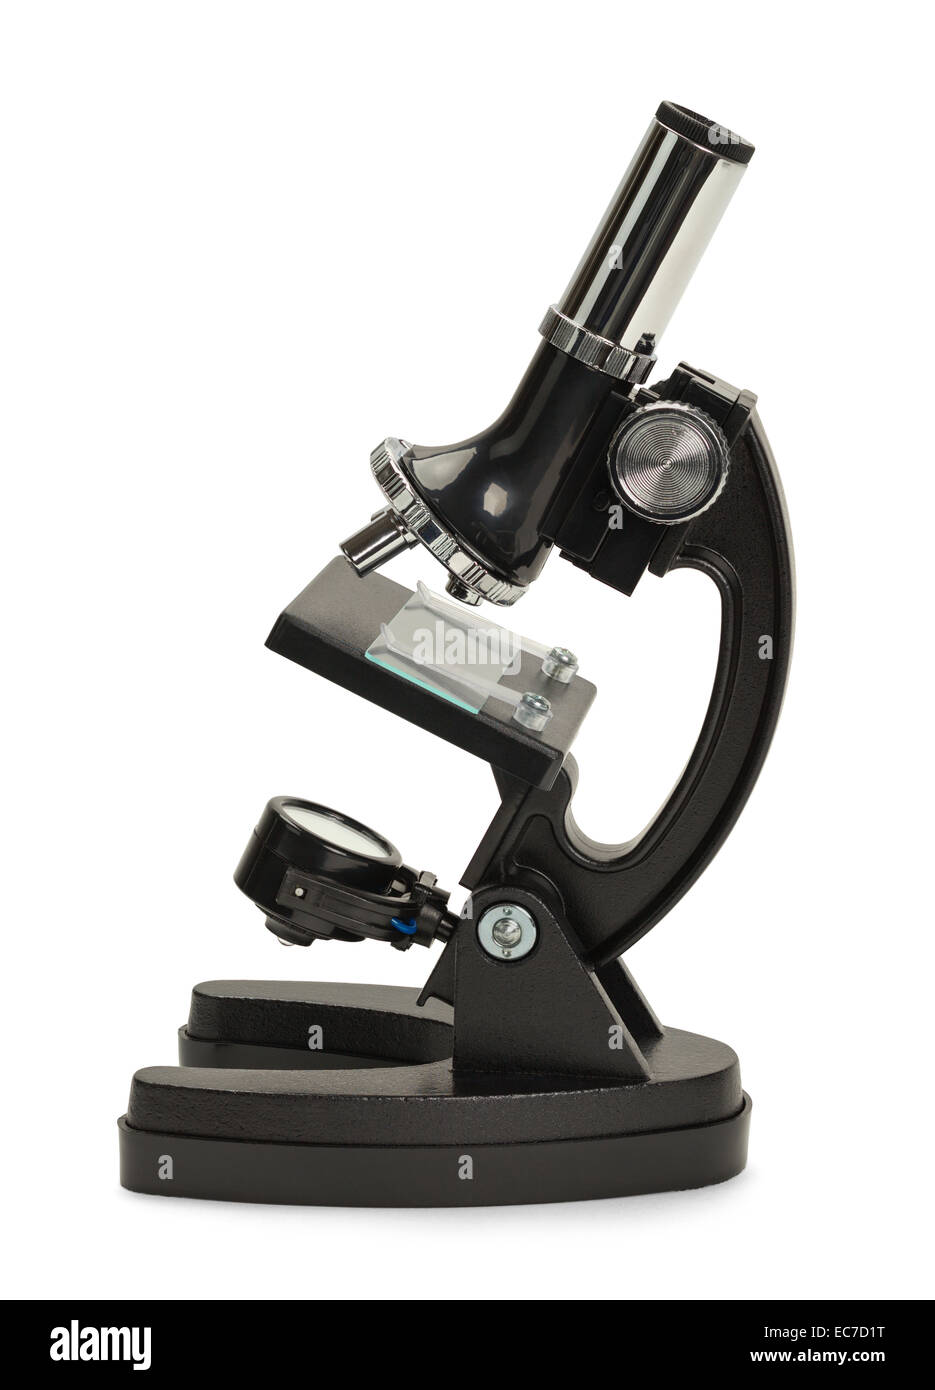 Neue schwarze Mikroskop von Seitenansicht, Isolated on White Background. Stockfoto